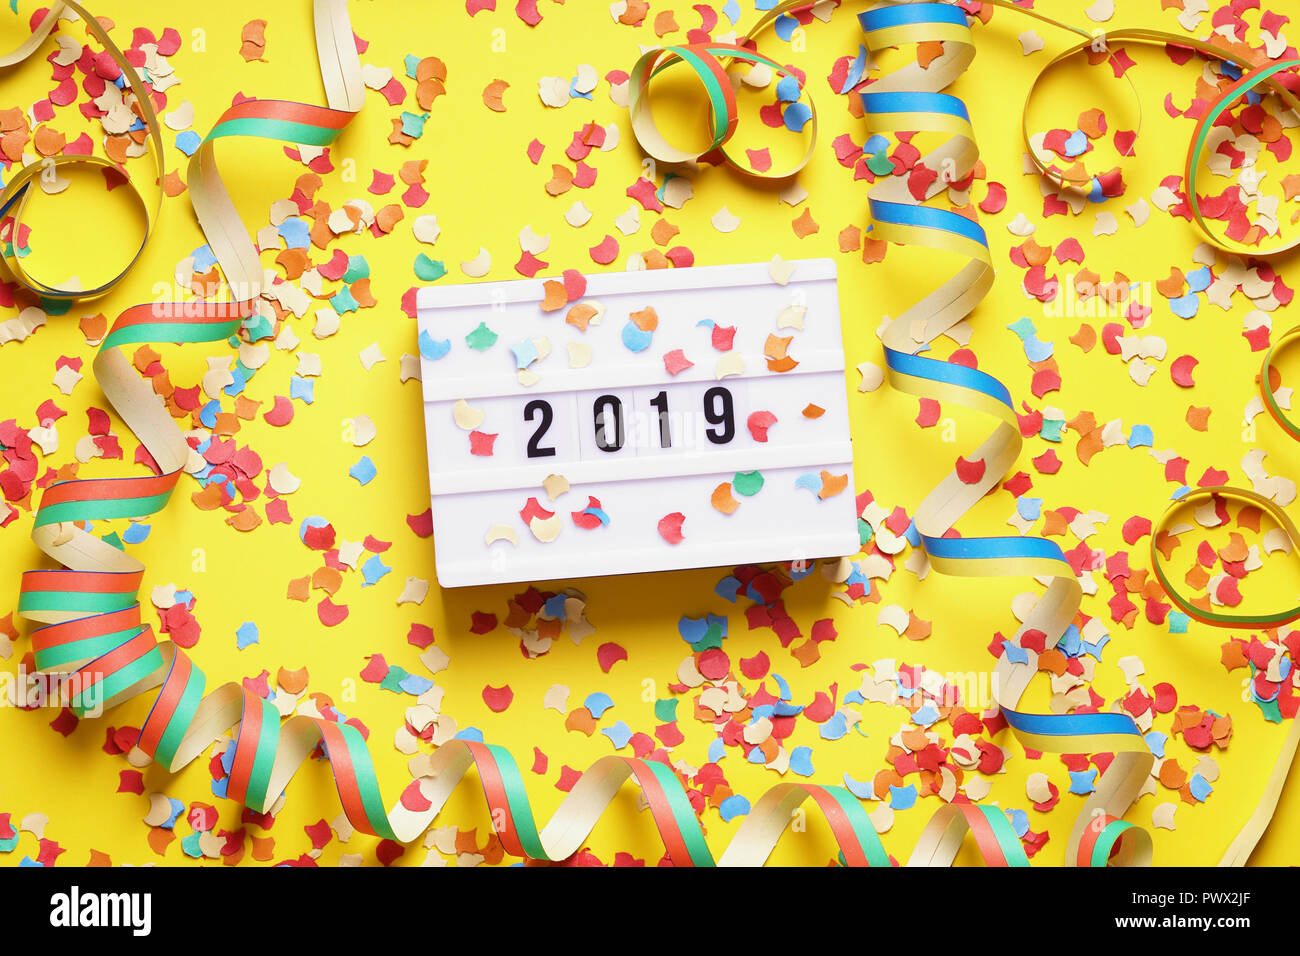 2019 Neues Jahr Feier flach Konzept mit Konfetti und Luftschlangen Stockfoto